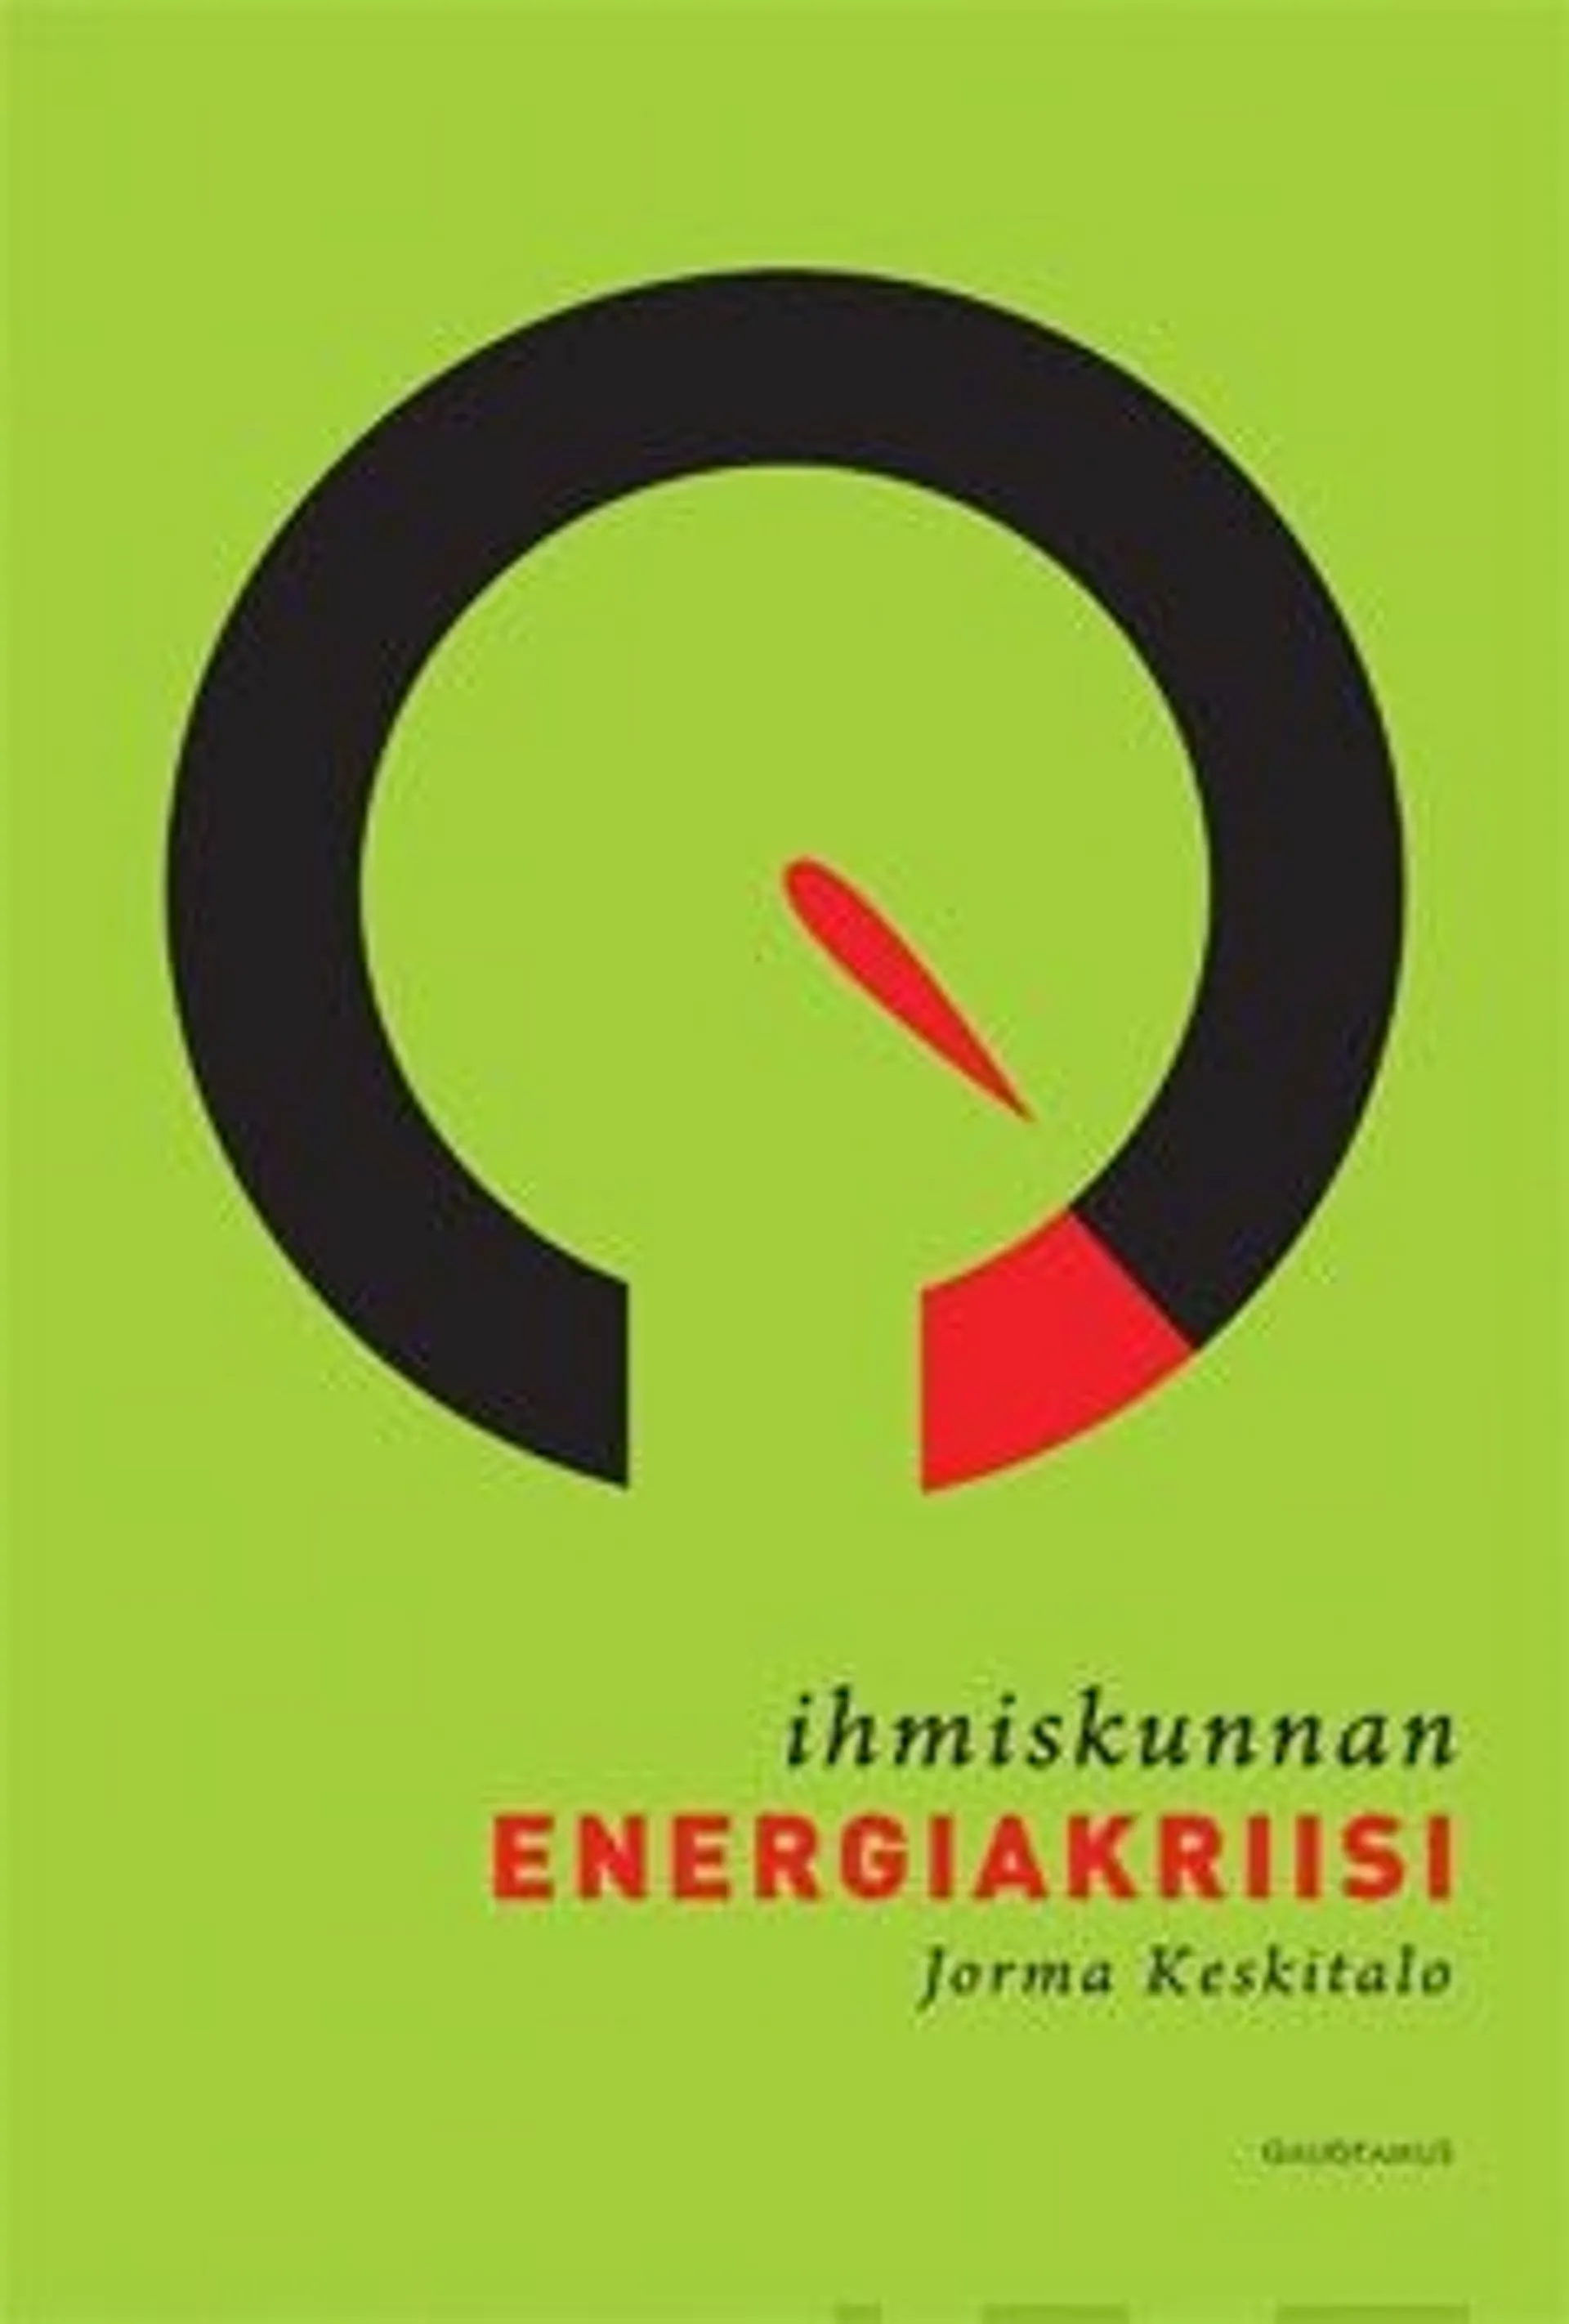 Keskitalo, Ihmiskunnan energiakriisi